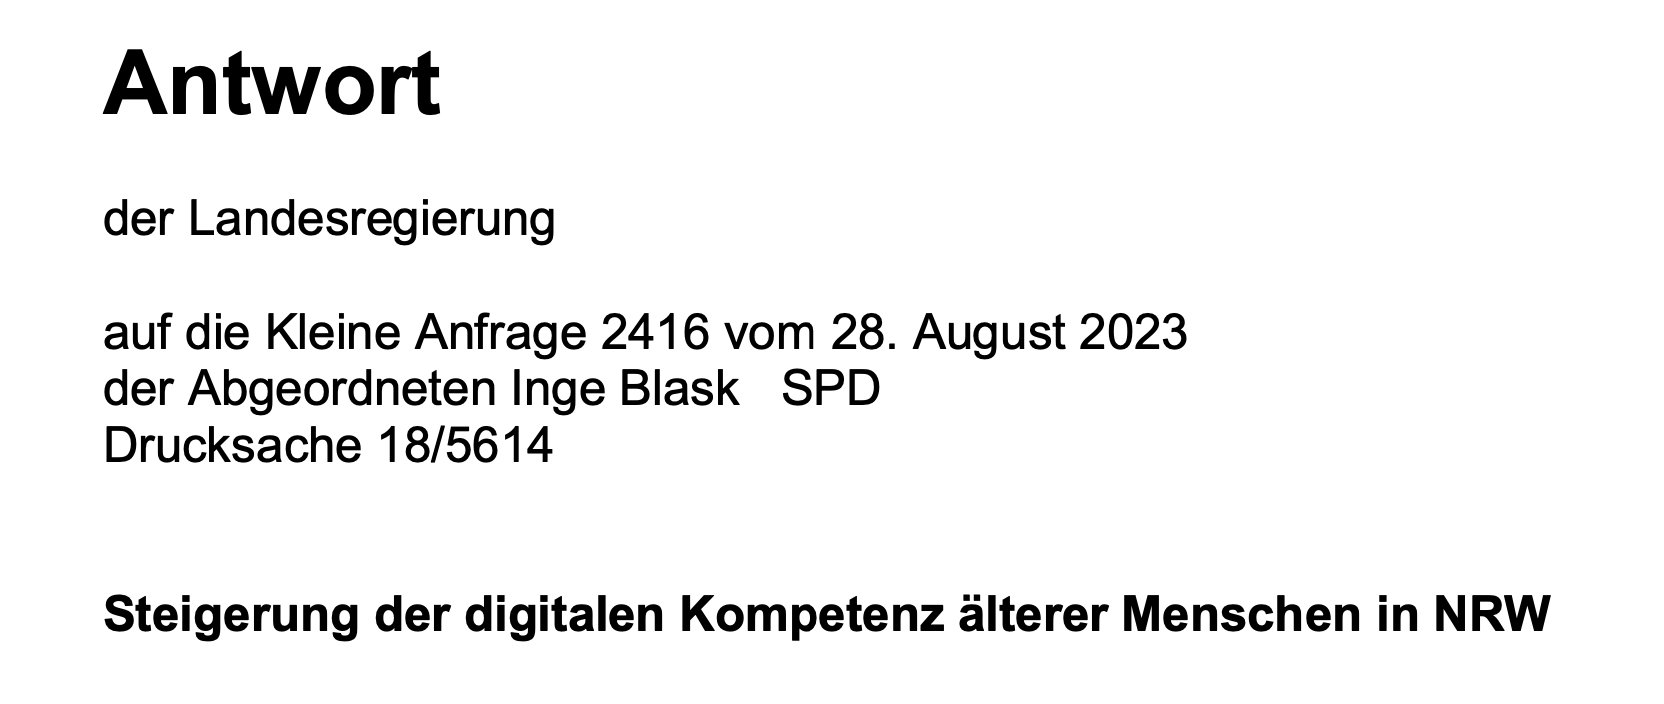 Textausschnitt: Antwort der Landesregierung auf die Kleine Anfrage 2416 vom 28. August 20923 ... Steigerung der digitalen Kompetenzen älterer Menschen in NRW